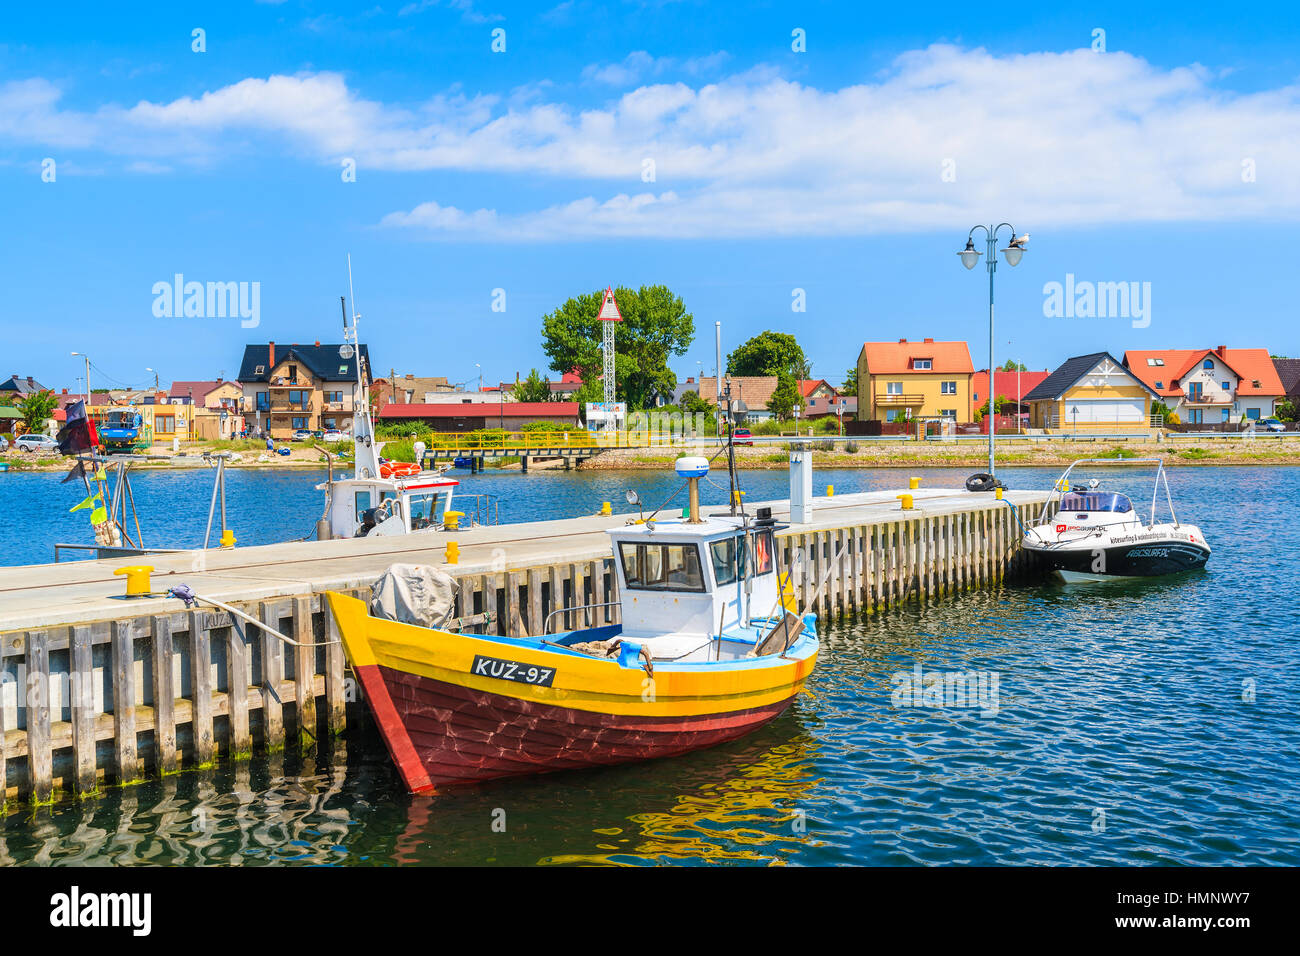 Porta KUZNICA, Polonia - giu 22, 2016: coloratissime barche di pescatori di ancoraggio nel Kuznica porta sulla penisola di Hel, Mar Baltico, Polonia. Foto Stock